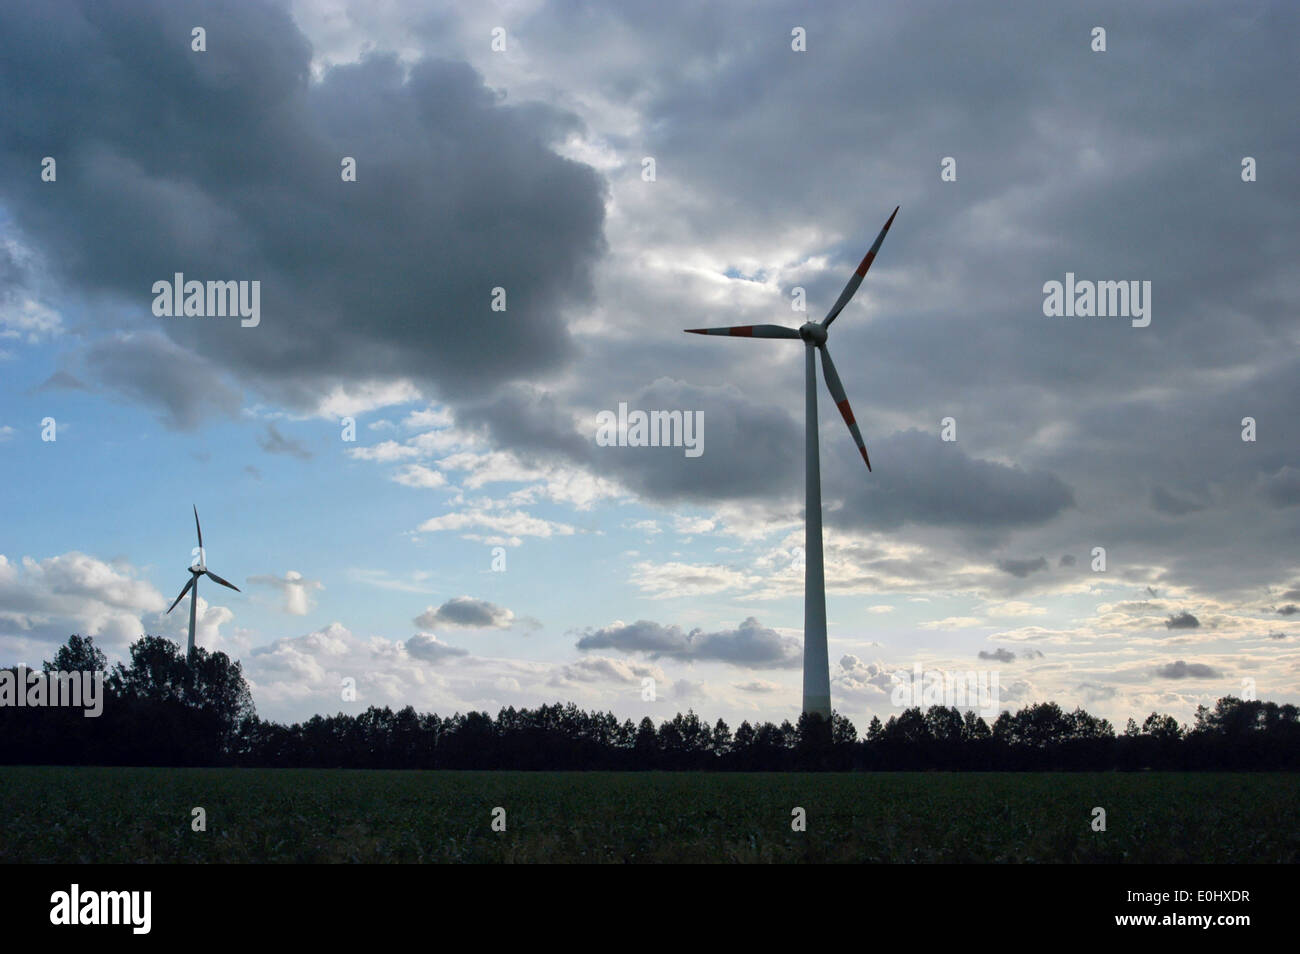 Deutschland, in der Nähe von Köln, Windenergie, wind Turbine, Deutschland, Nahe Köln, Windenergie, Windturbine Stockfoto